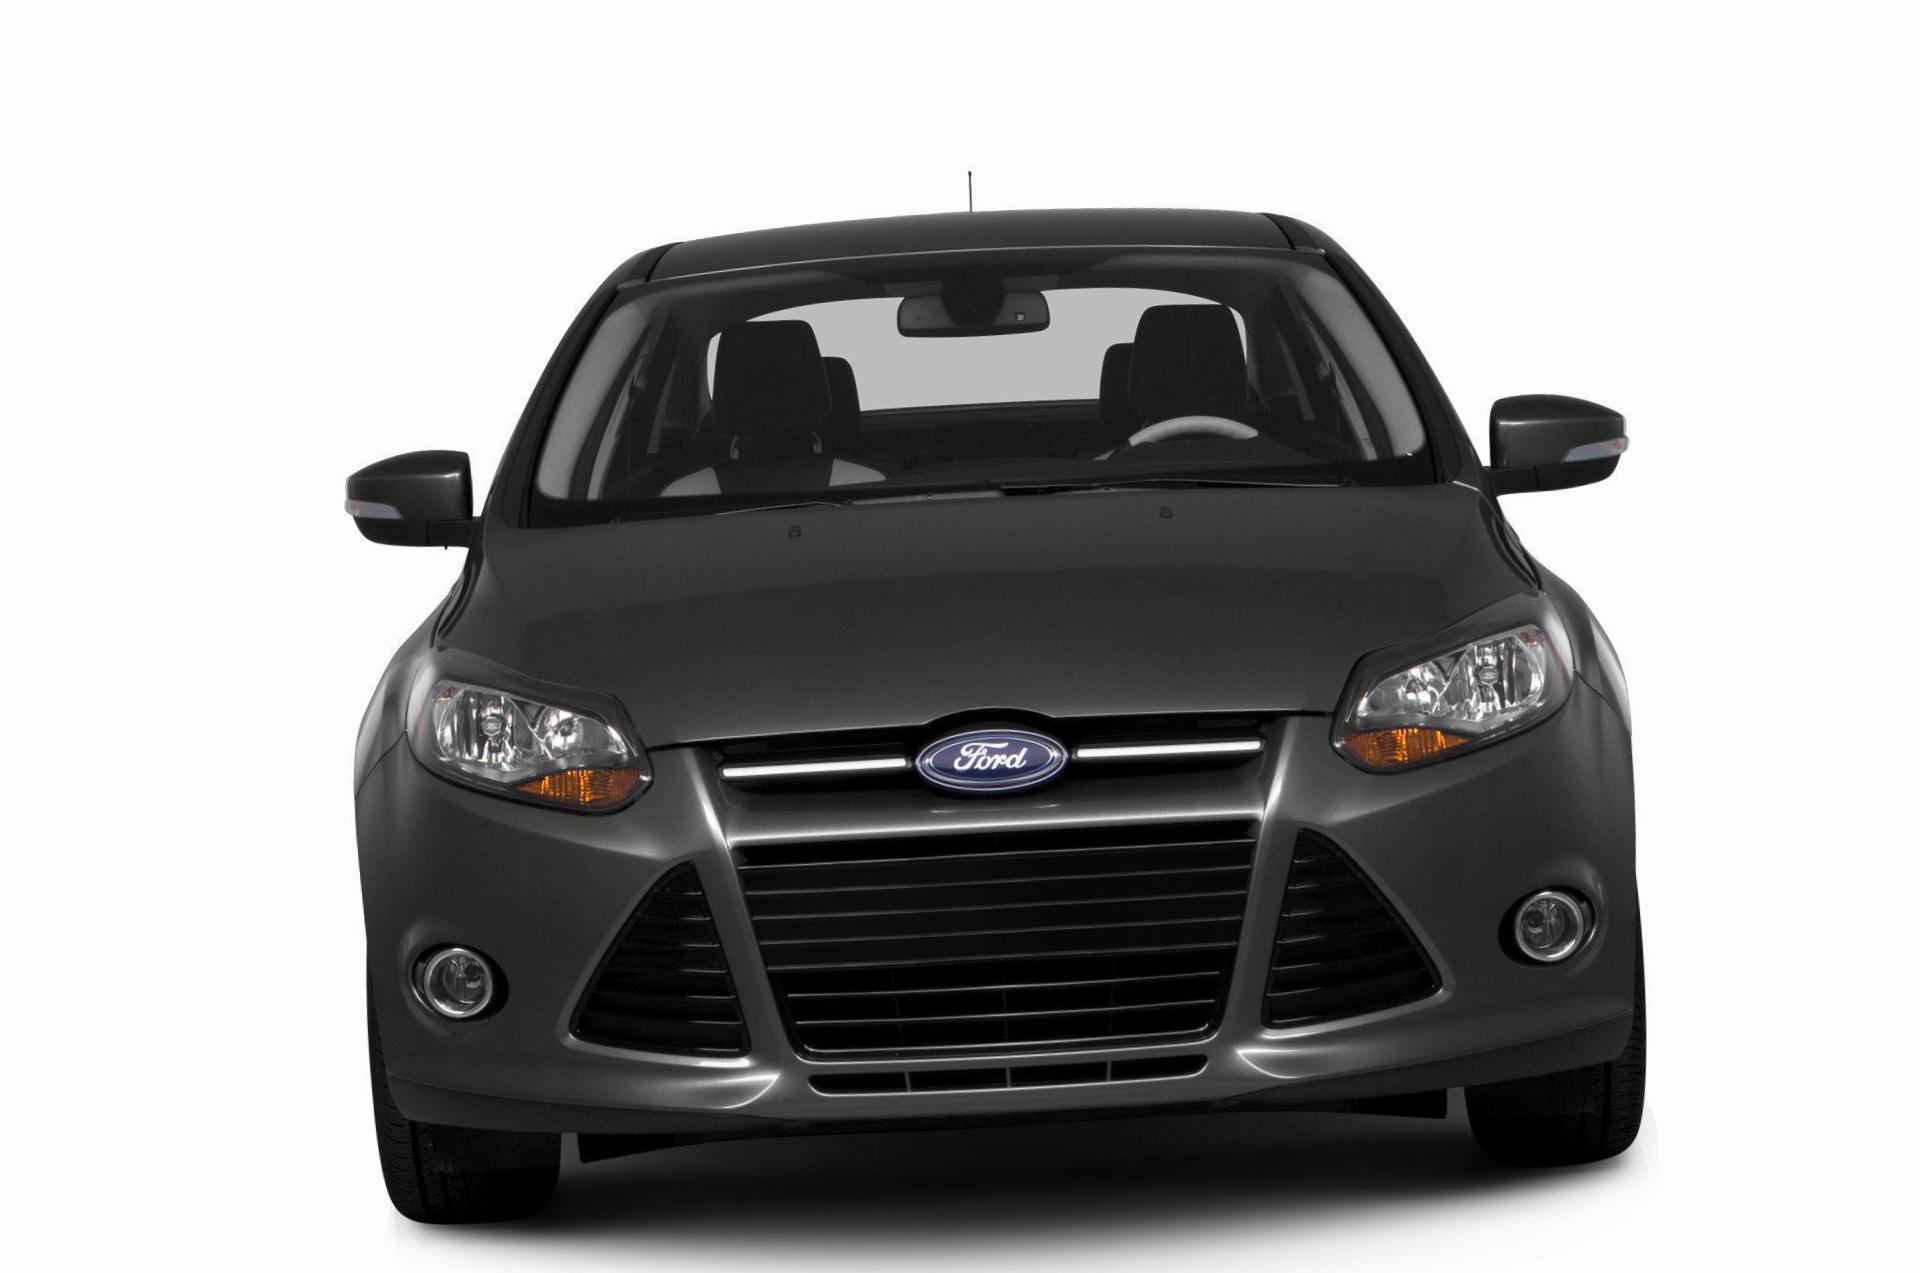 Focus Sedan Ford prices 2010